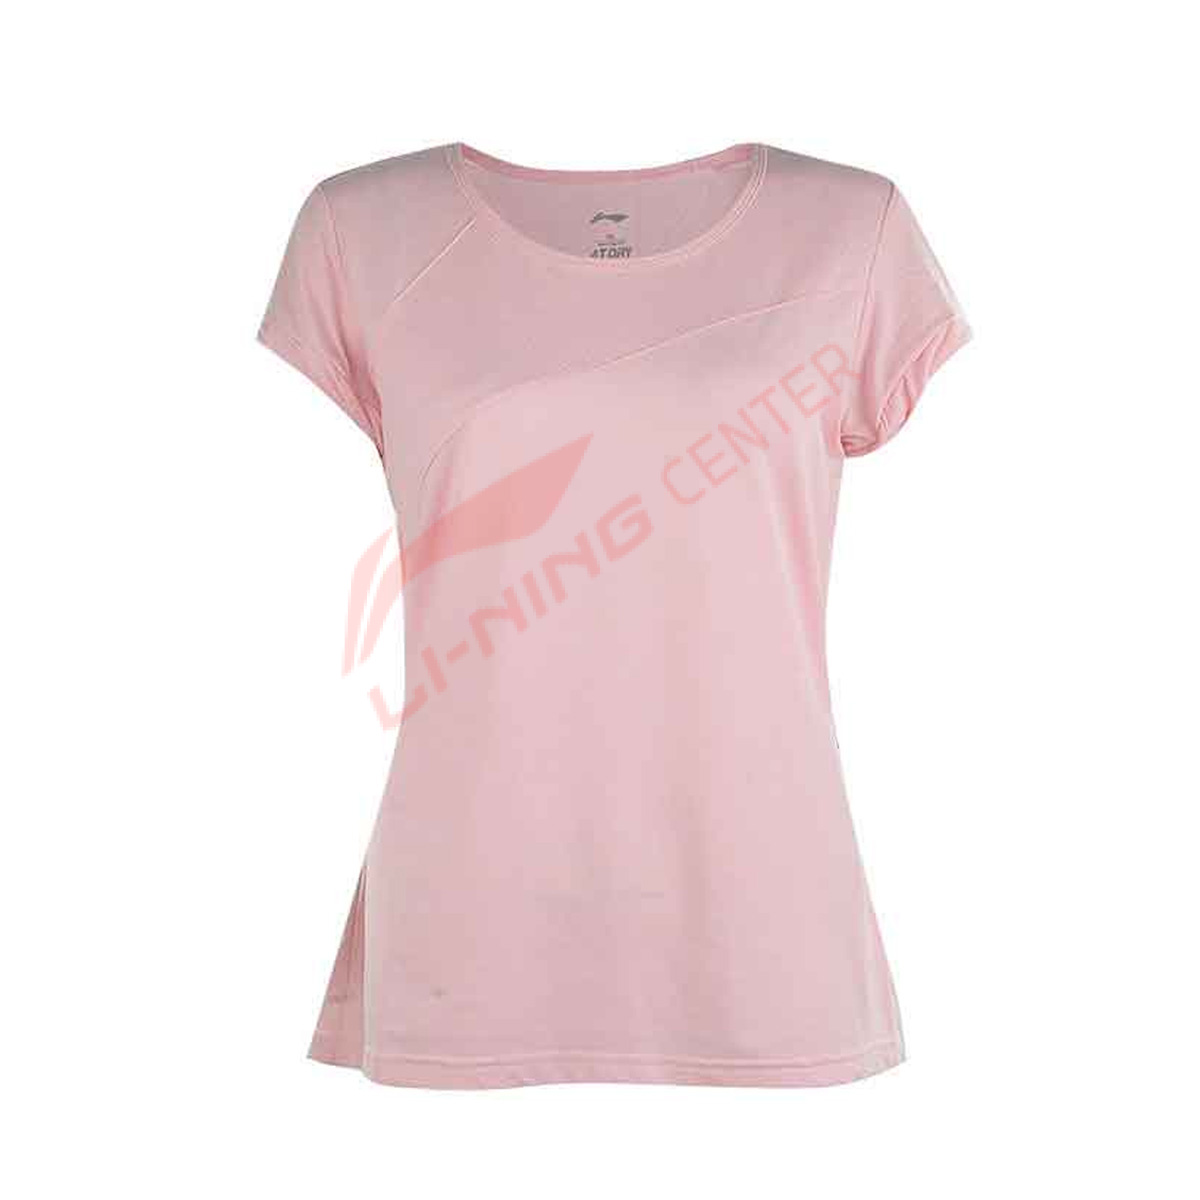 Женская футболка LI-NING ATSH142-5 (размеры: L, XL, 2XL)